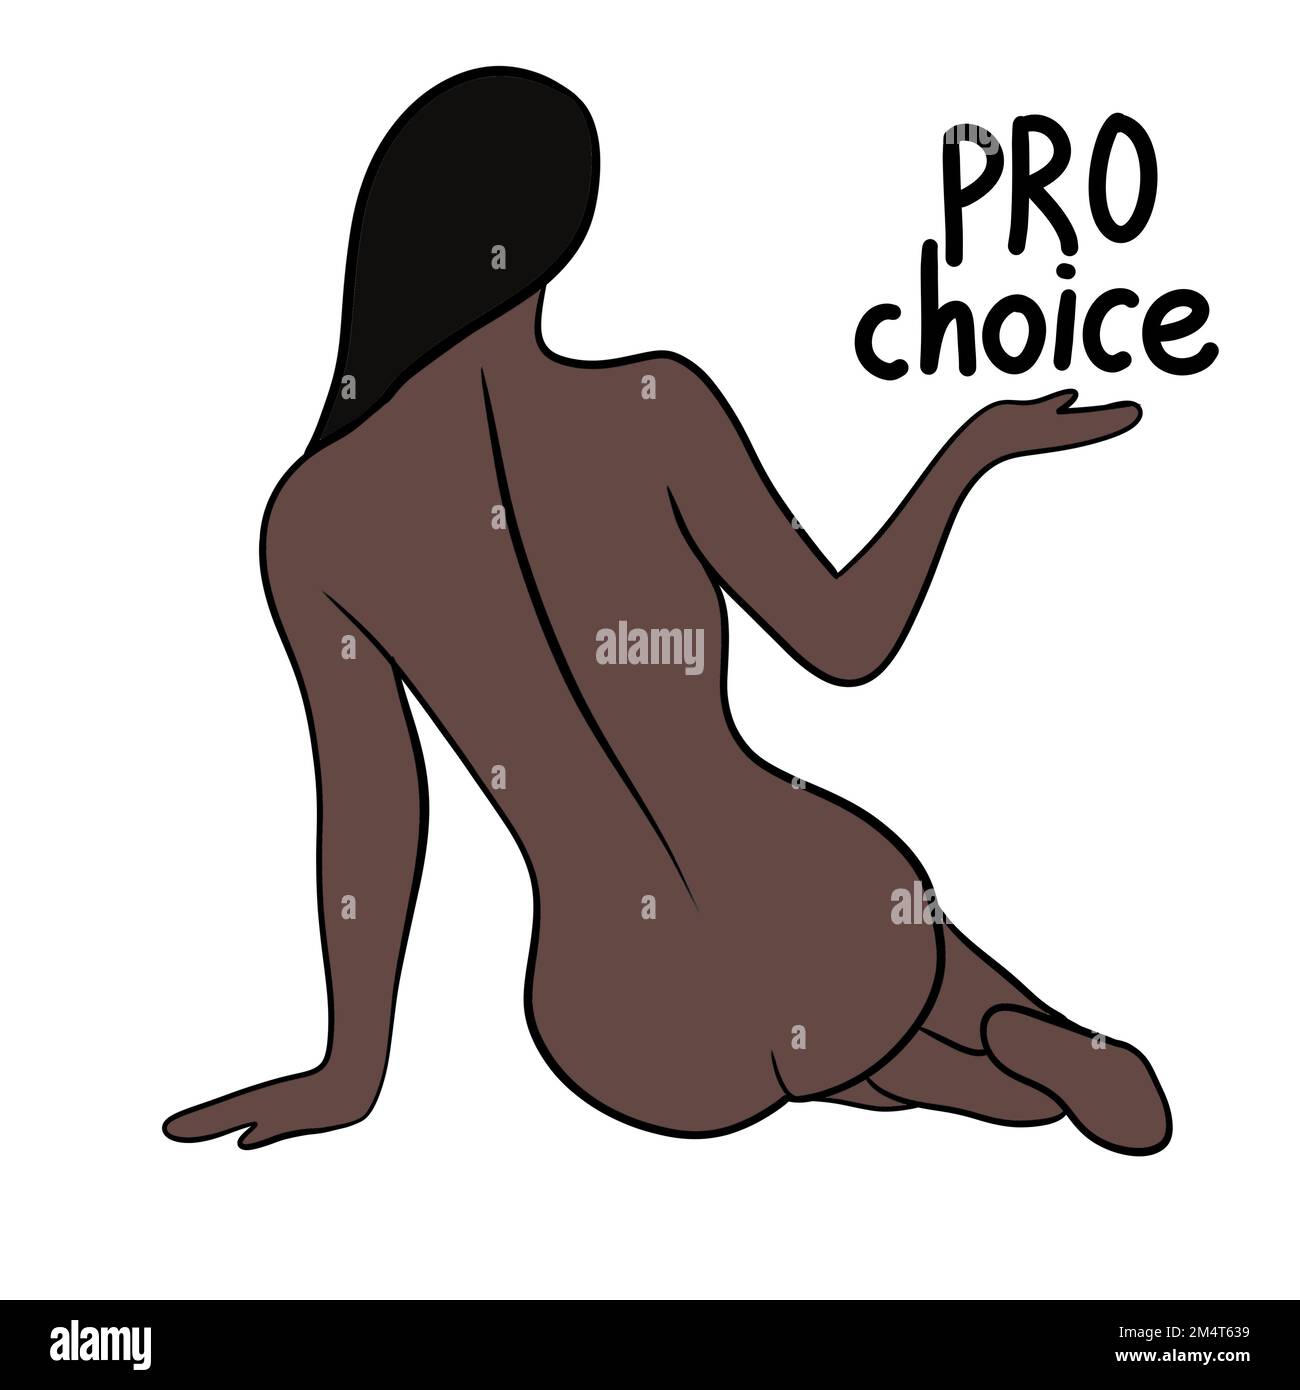 Il mio corpo la mia scelta disegnata a mano illustrazione con corpo africano nero della donna. Concetto di attivismo del femminismo, diritti di aborto riproduttivo, disegno di row v wade. Donna con parole pro choice scritta capelli scuri Foto Stock